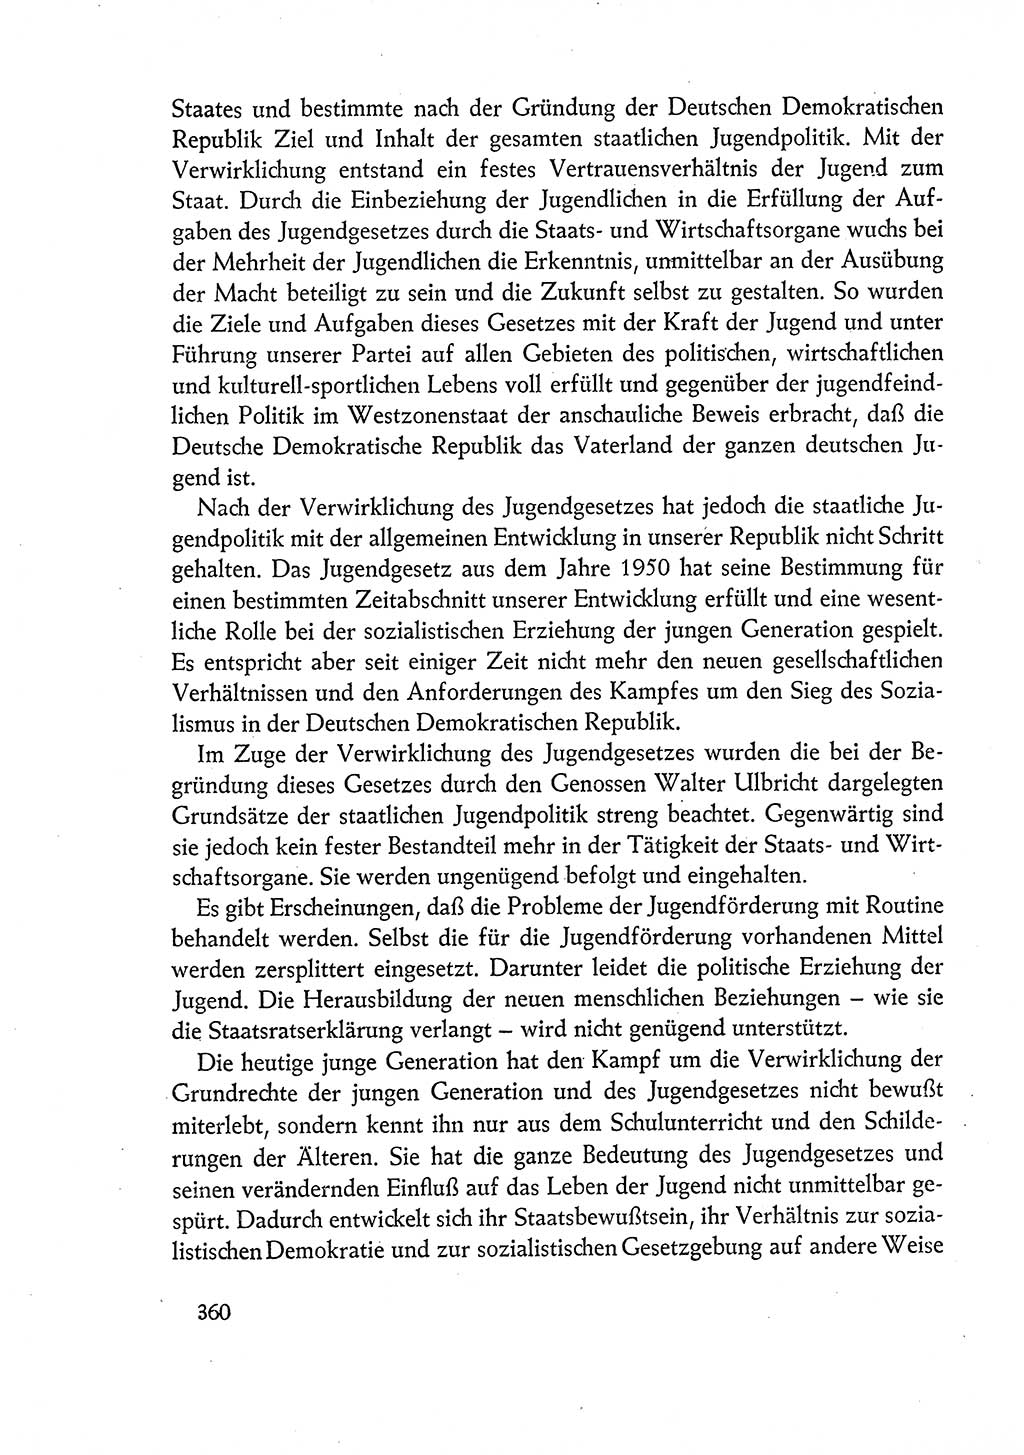 Dokumente der Sozialistischen Einheitspartei Deutschlands (SED) [Deutsche Demokratische Republik (DDR)] 1960-1961, Seite 360 (Dok. SED DDR 1960-1961, S. 360)